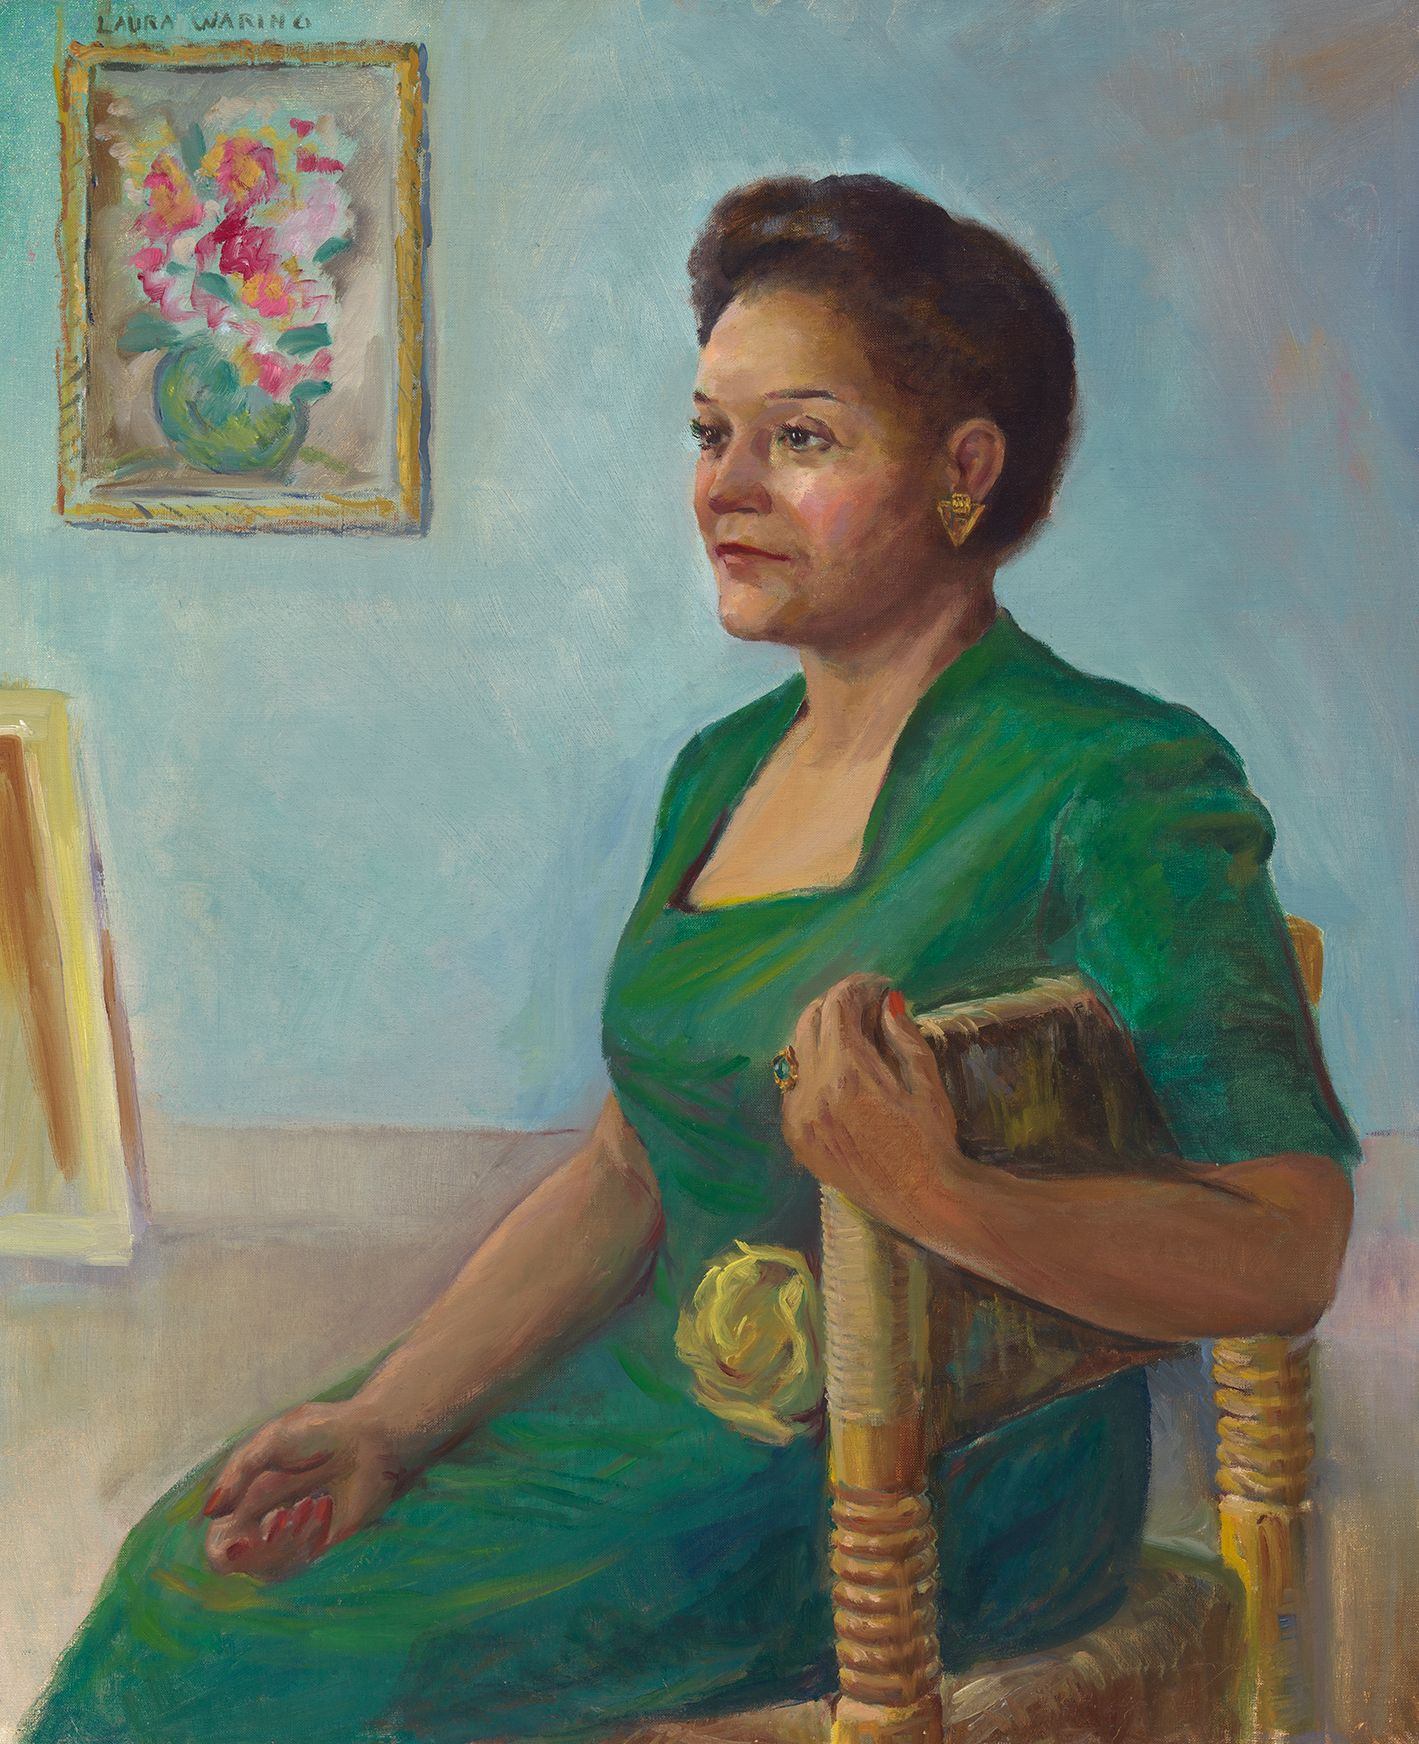 제시 레드먼 포셋 by Laura Wheeler Waring - 1945년 - 91.9 × 76.7 cm 